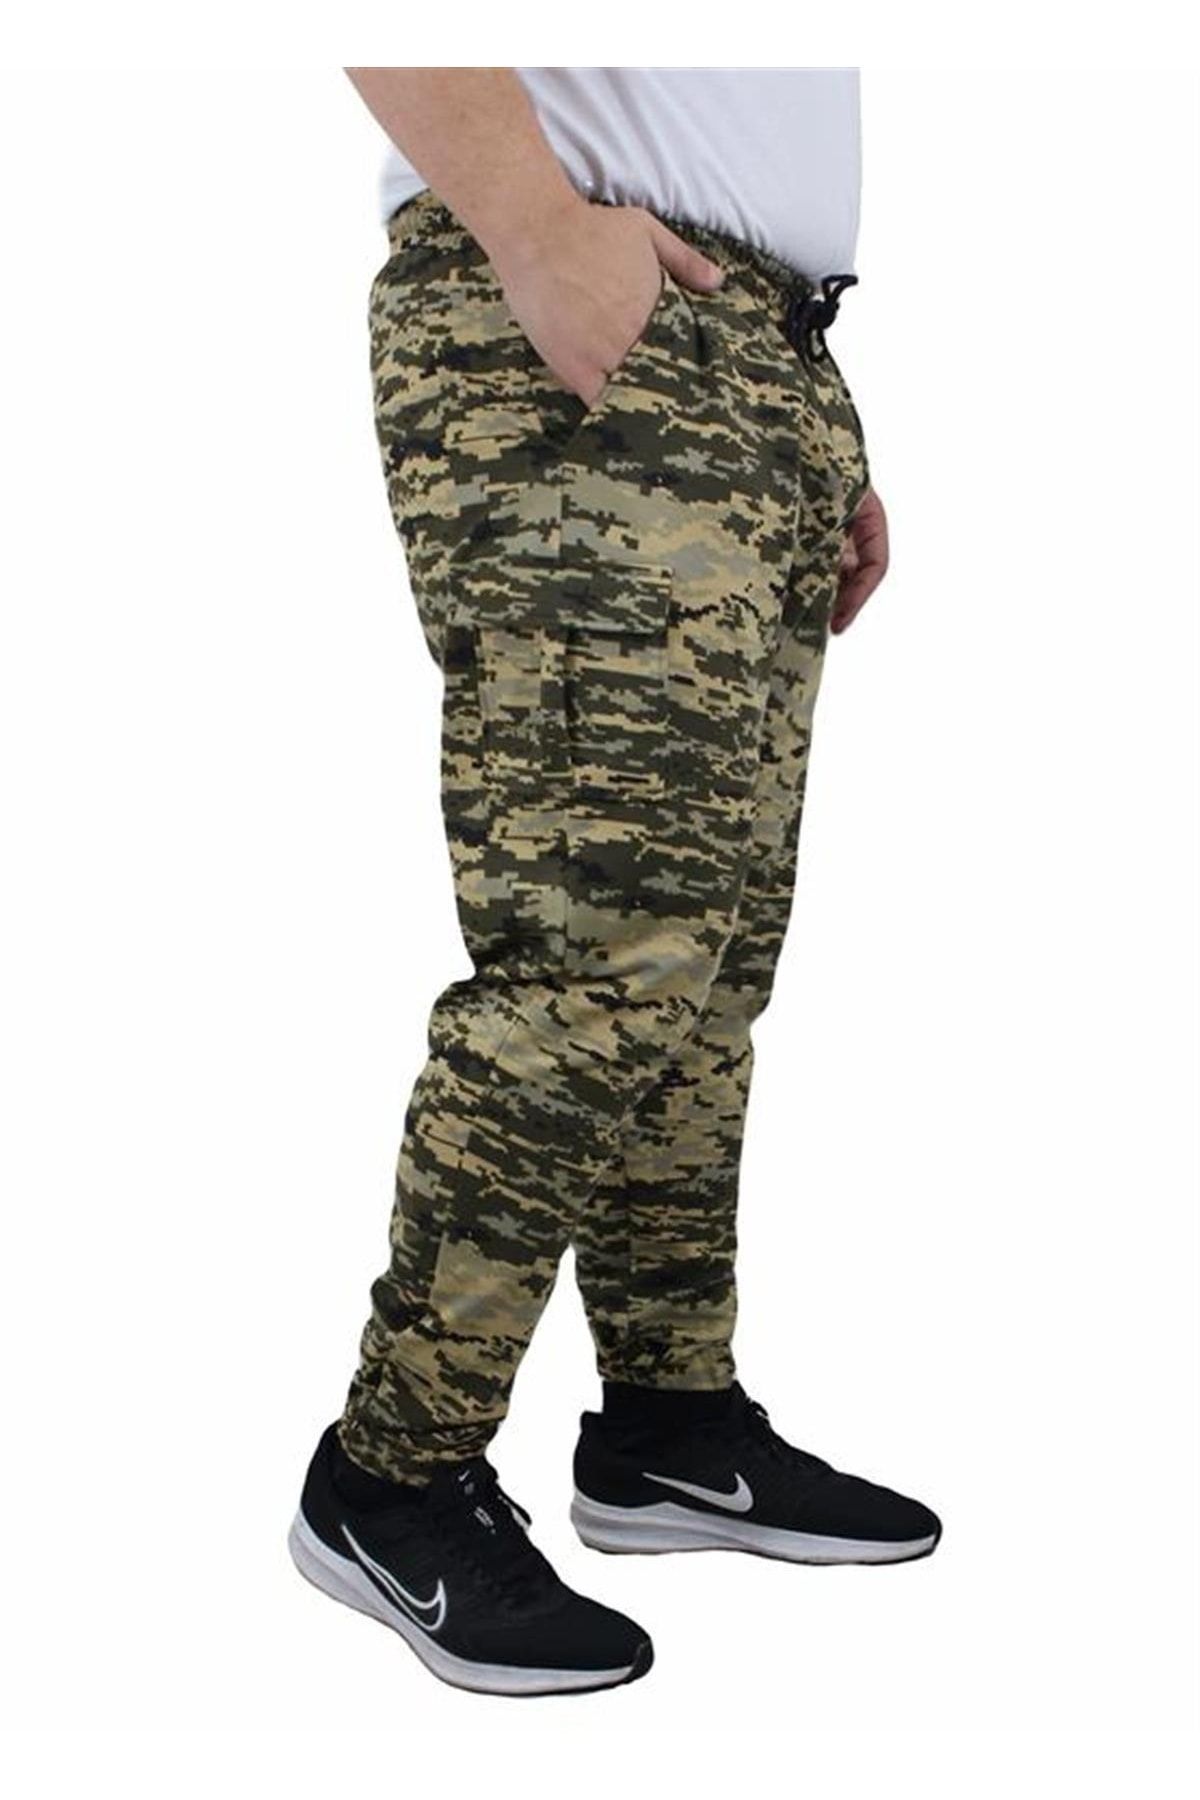 Starbattal Büyük Beden Commando Camouflage Erkek Esofman Altı 23501 Askeri Yeşil